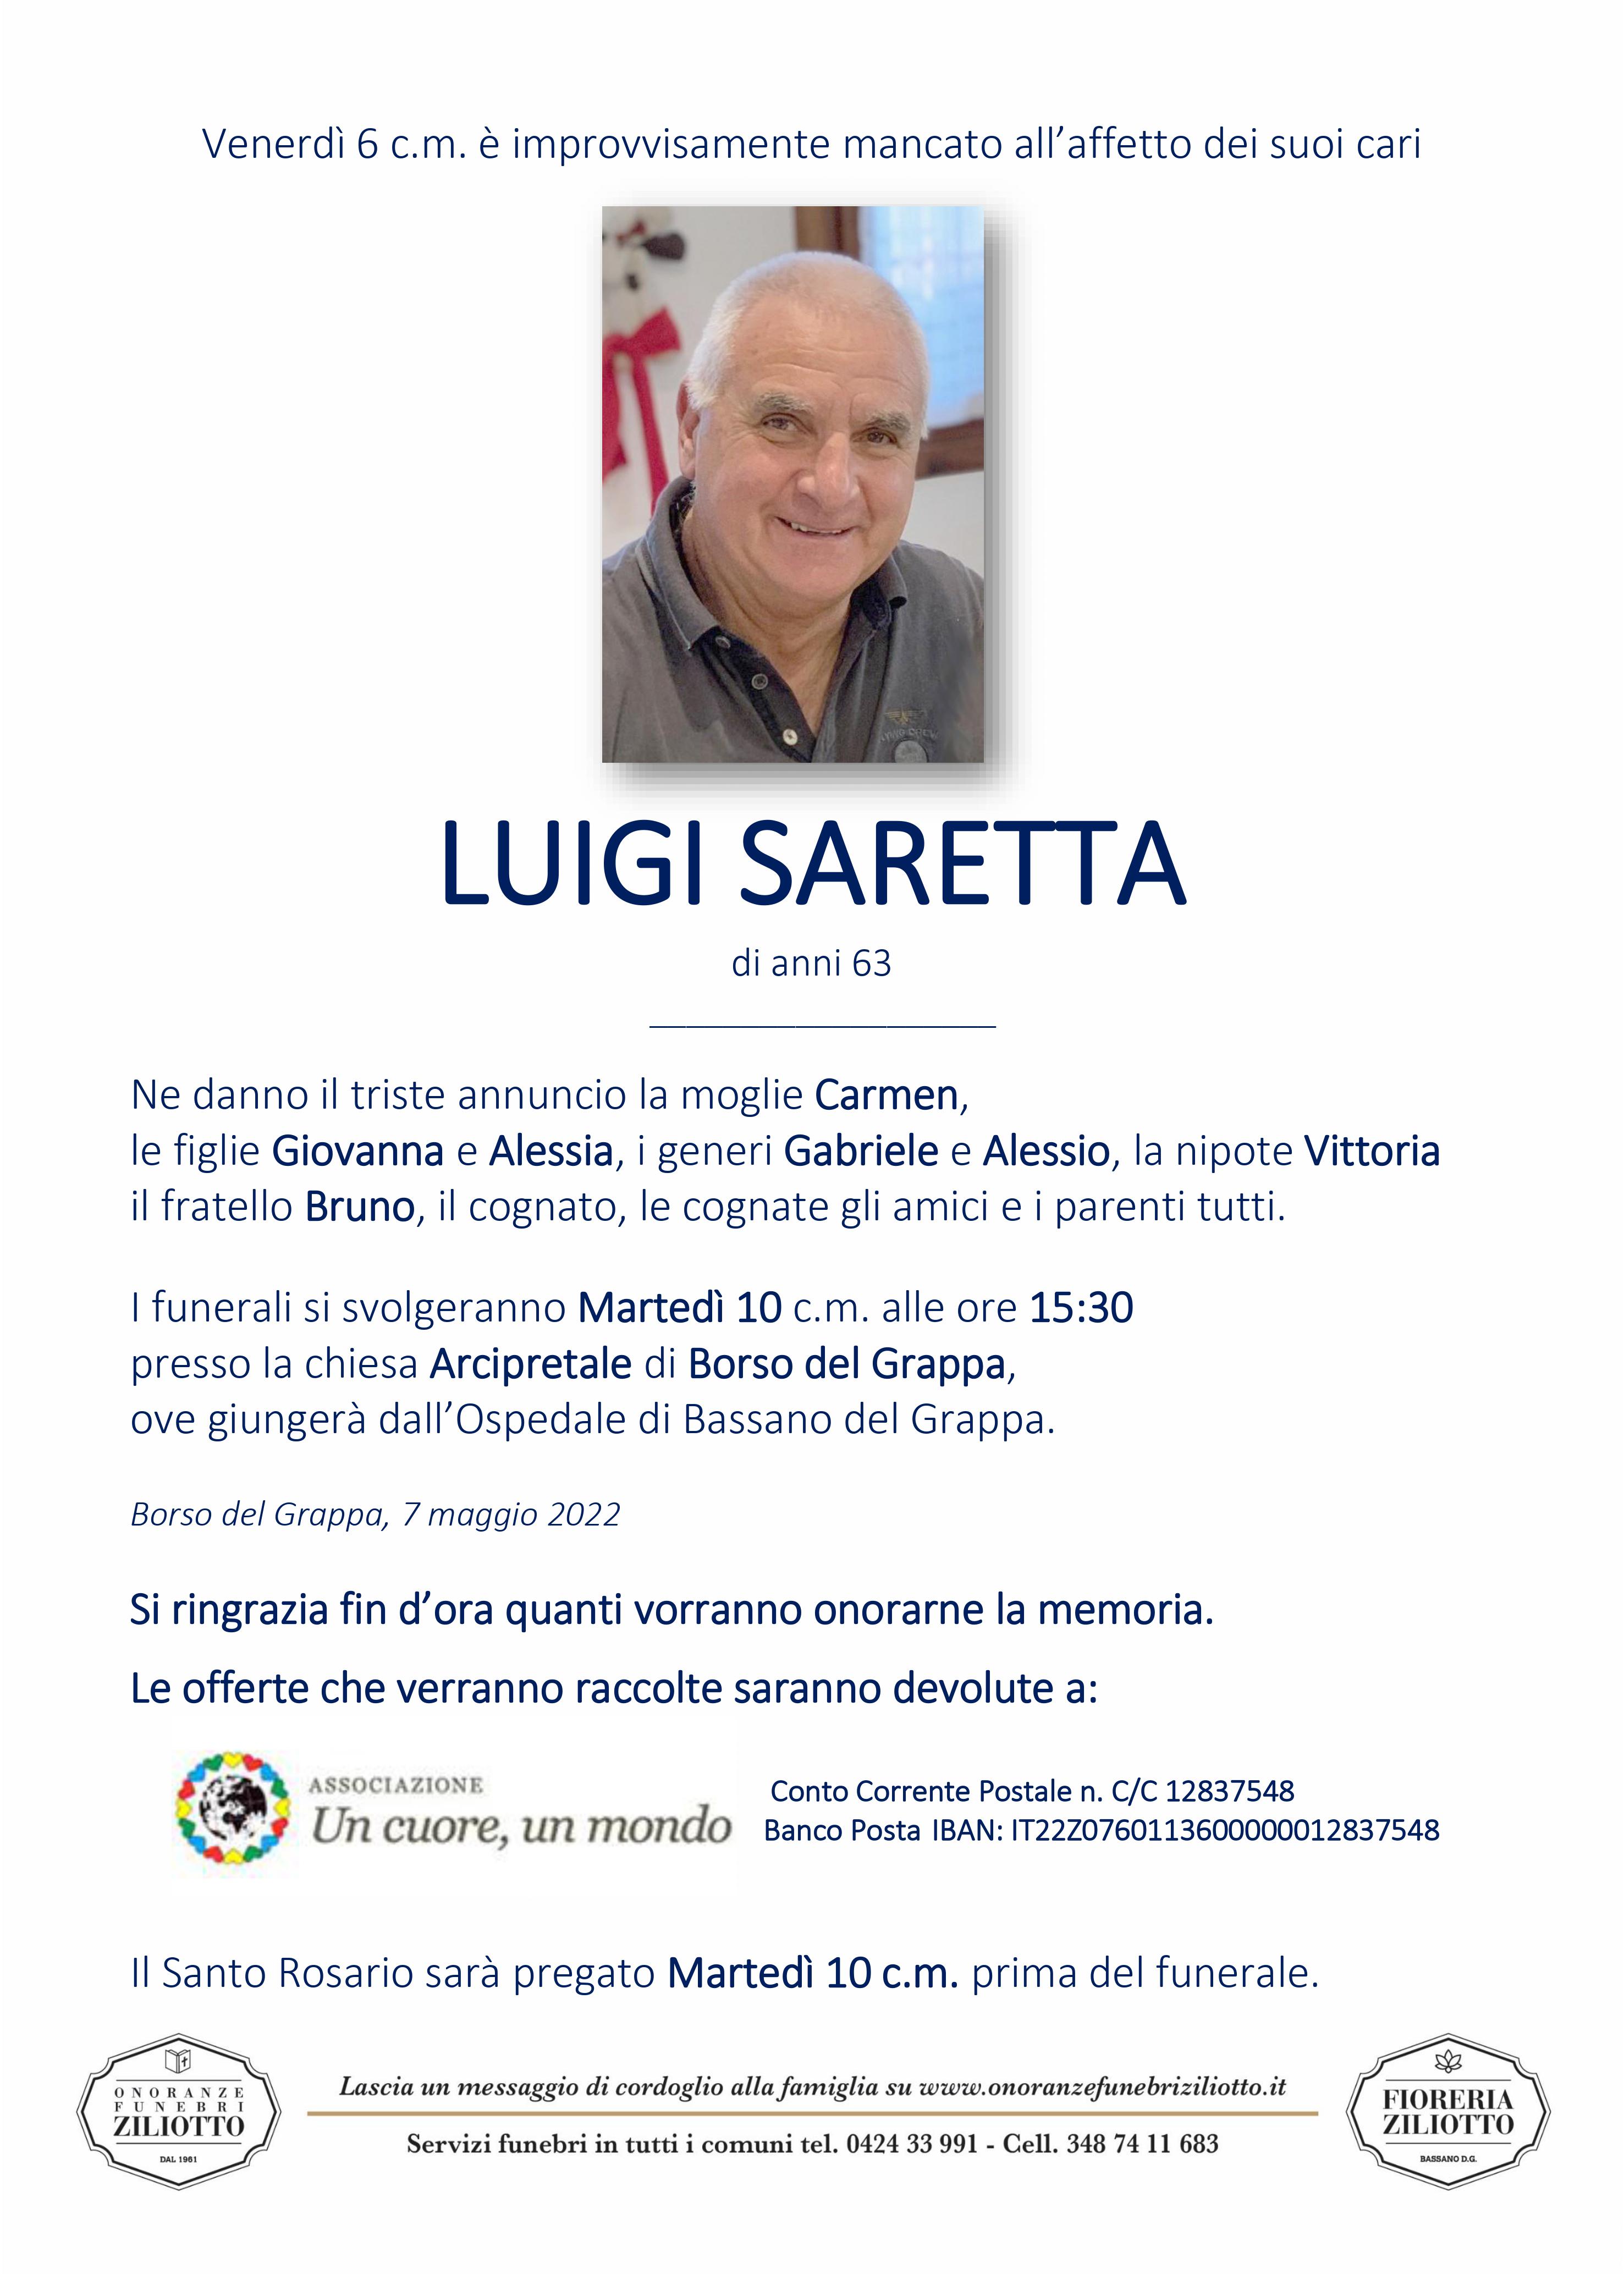 Luigi Saretta - 63 anni - Borso del Grappa